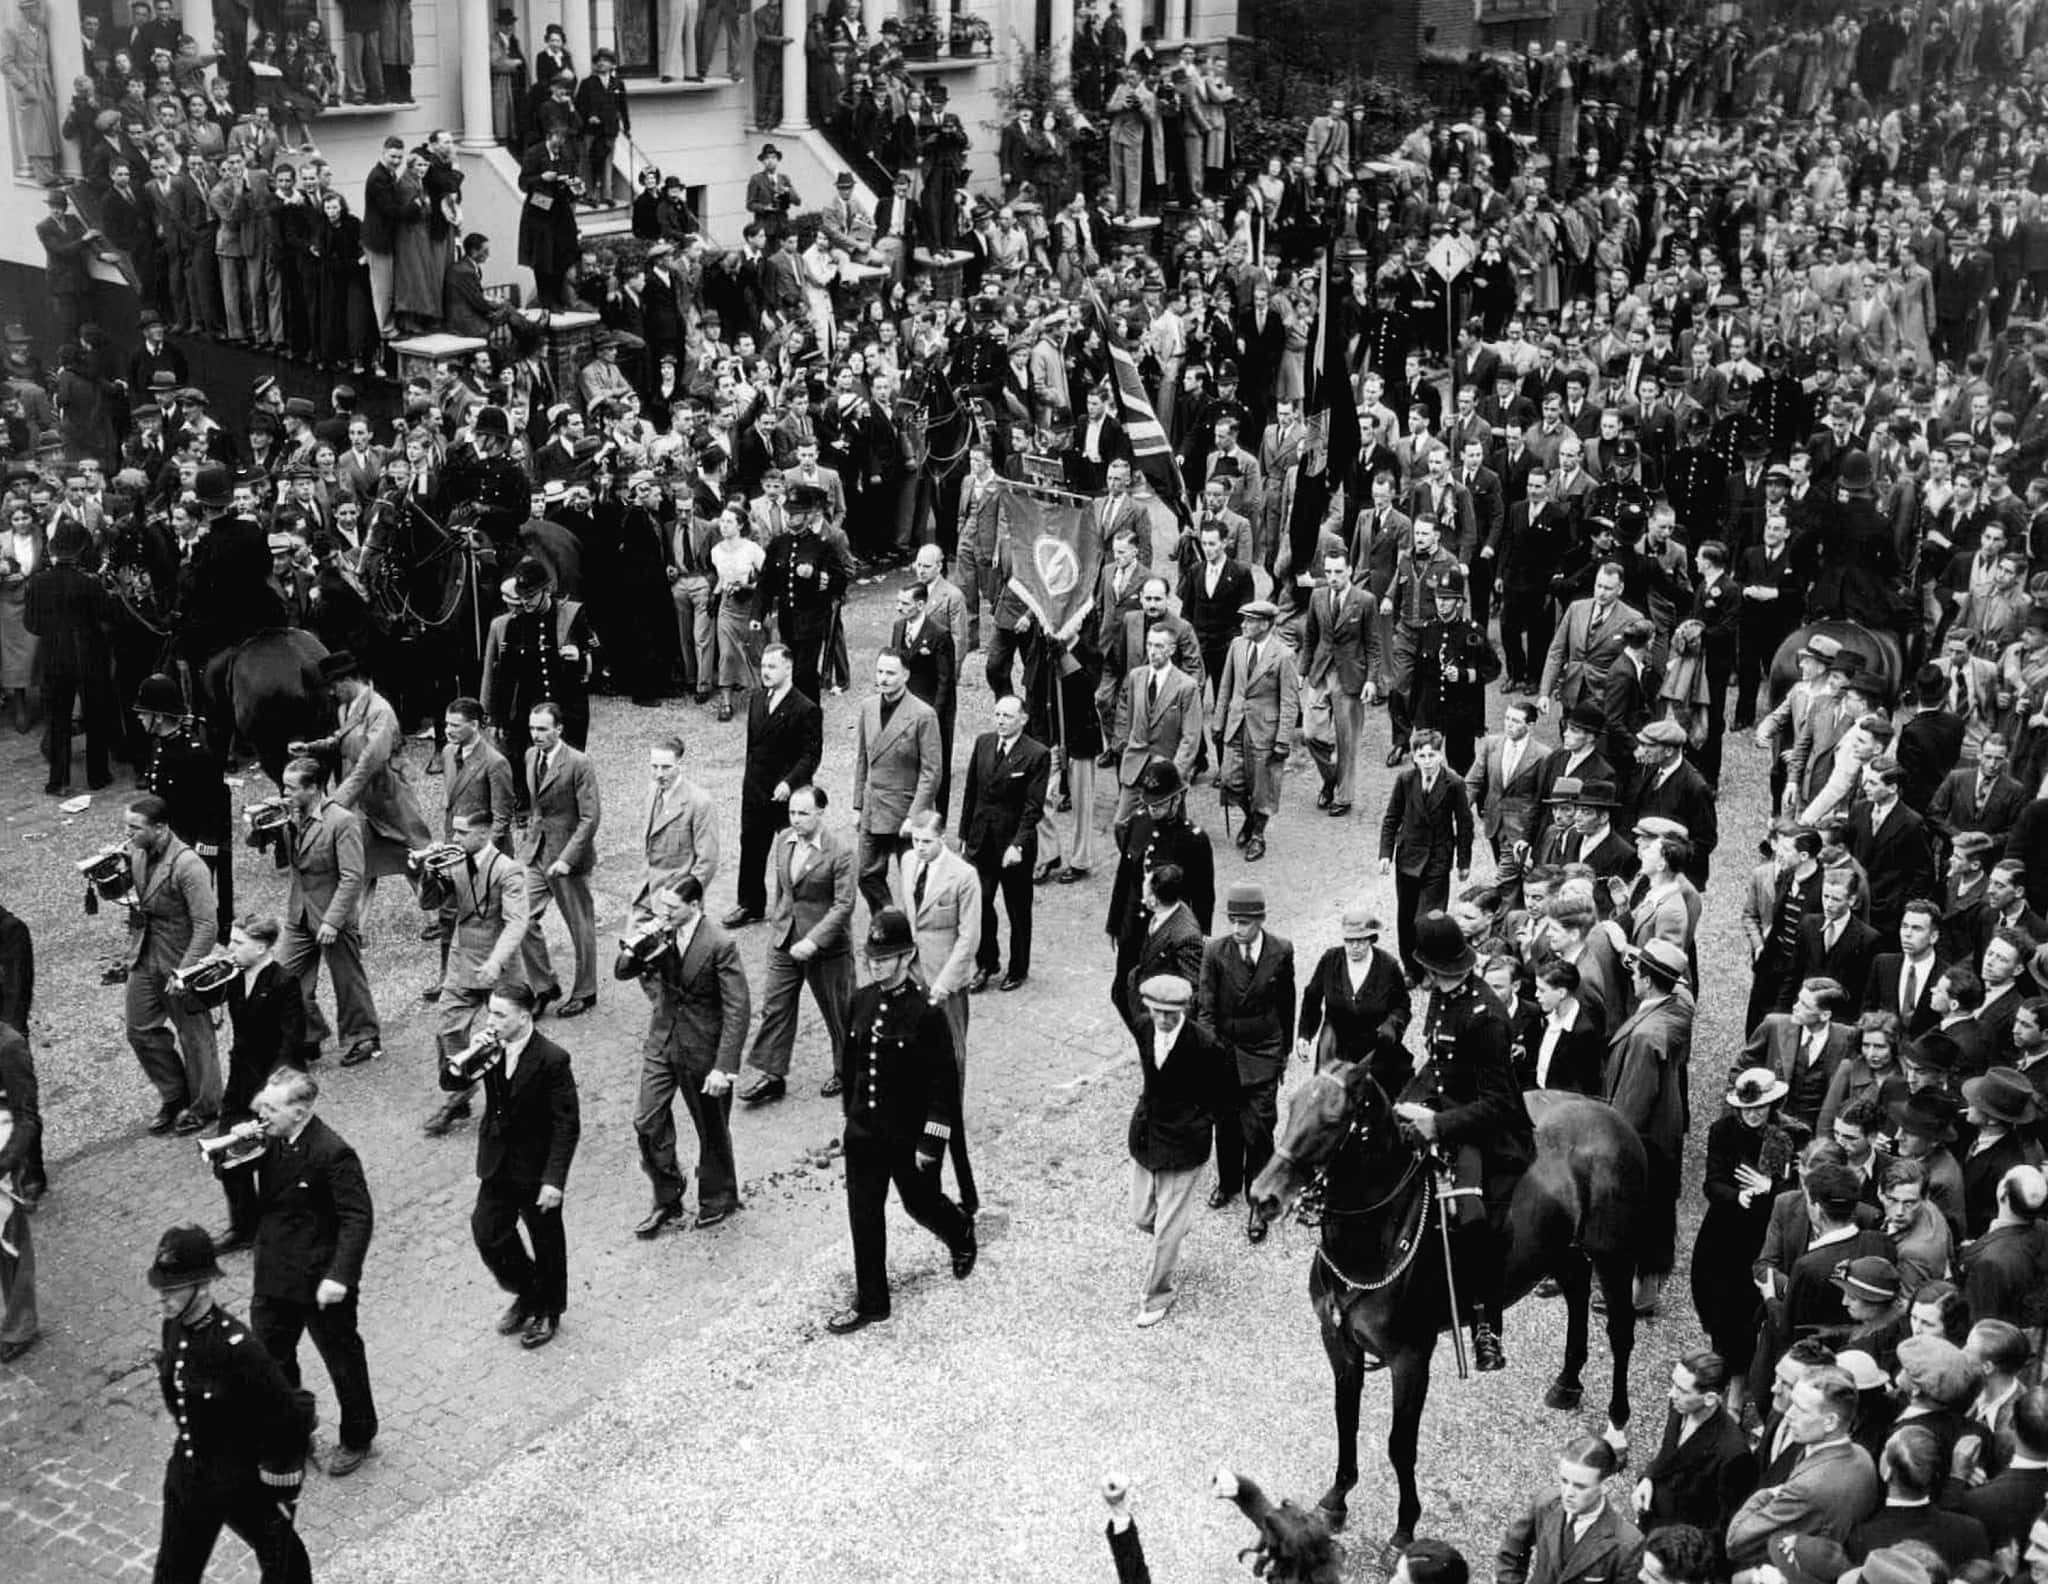 אילוסטרציה: תחילת המצעד של איגוד הפשיסטים הבריטים, 4 ביולי 1937. סר אוסוולד מוסלי נראה בתמונה בחליפה בהירה (במרכז) (צילום: AP Photo)